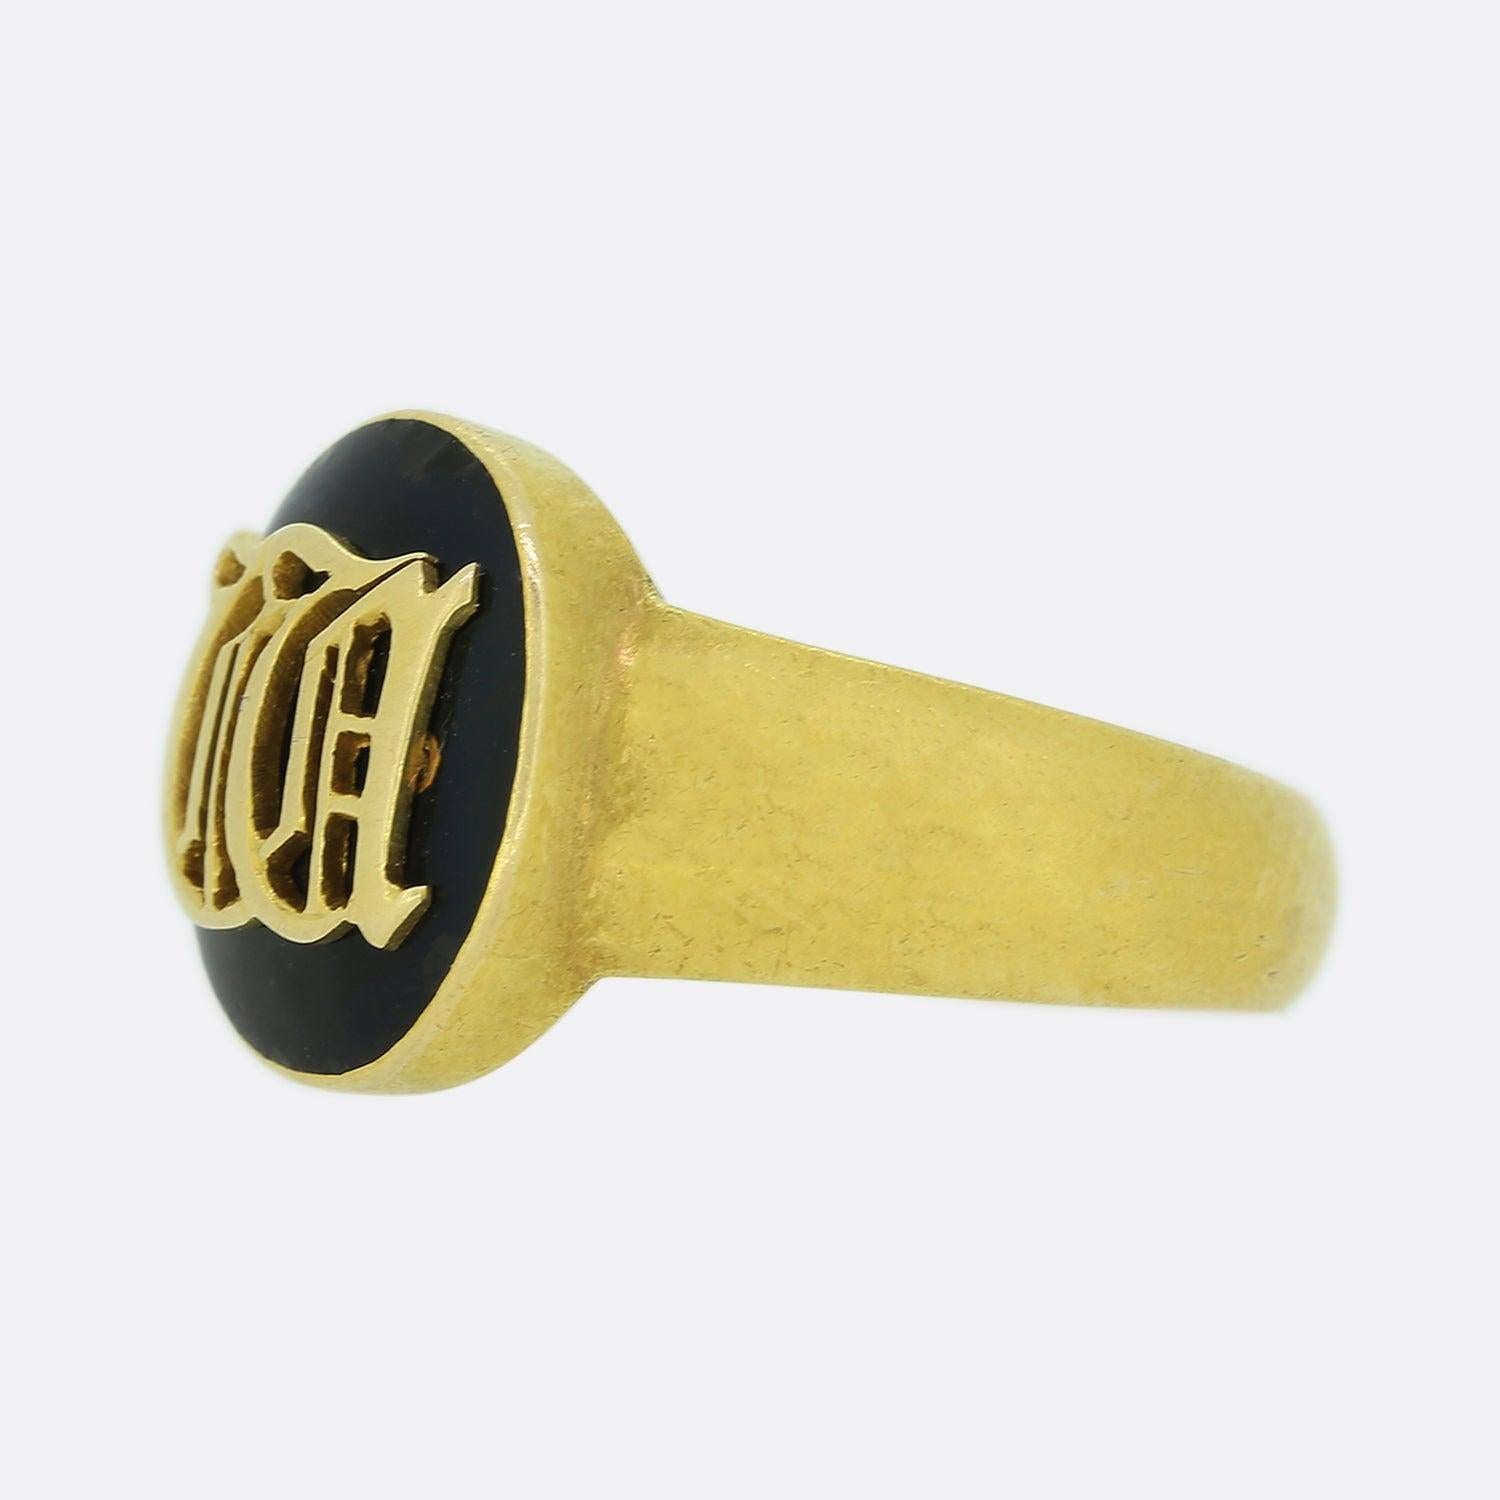 Voici une magnifique bague de deuil en or jaune 18ct datant de l'époque victorienne. La bague comporte des initiales sur le devant, un compartiment à médaillon au dos de la face de la bague et a été fabriquée en or jaune 18ct. 

Condit : Utilisé